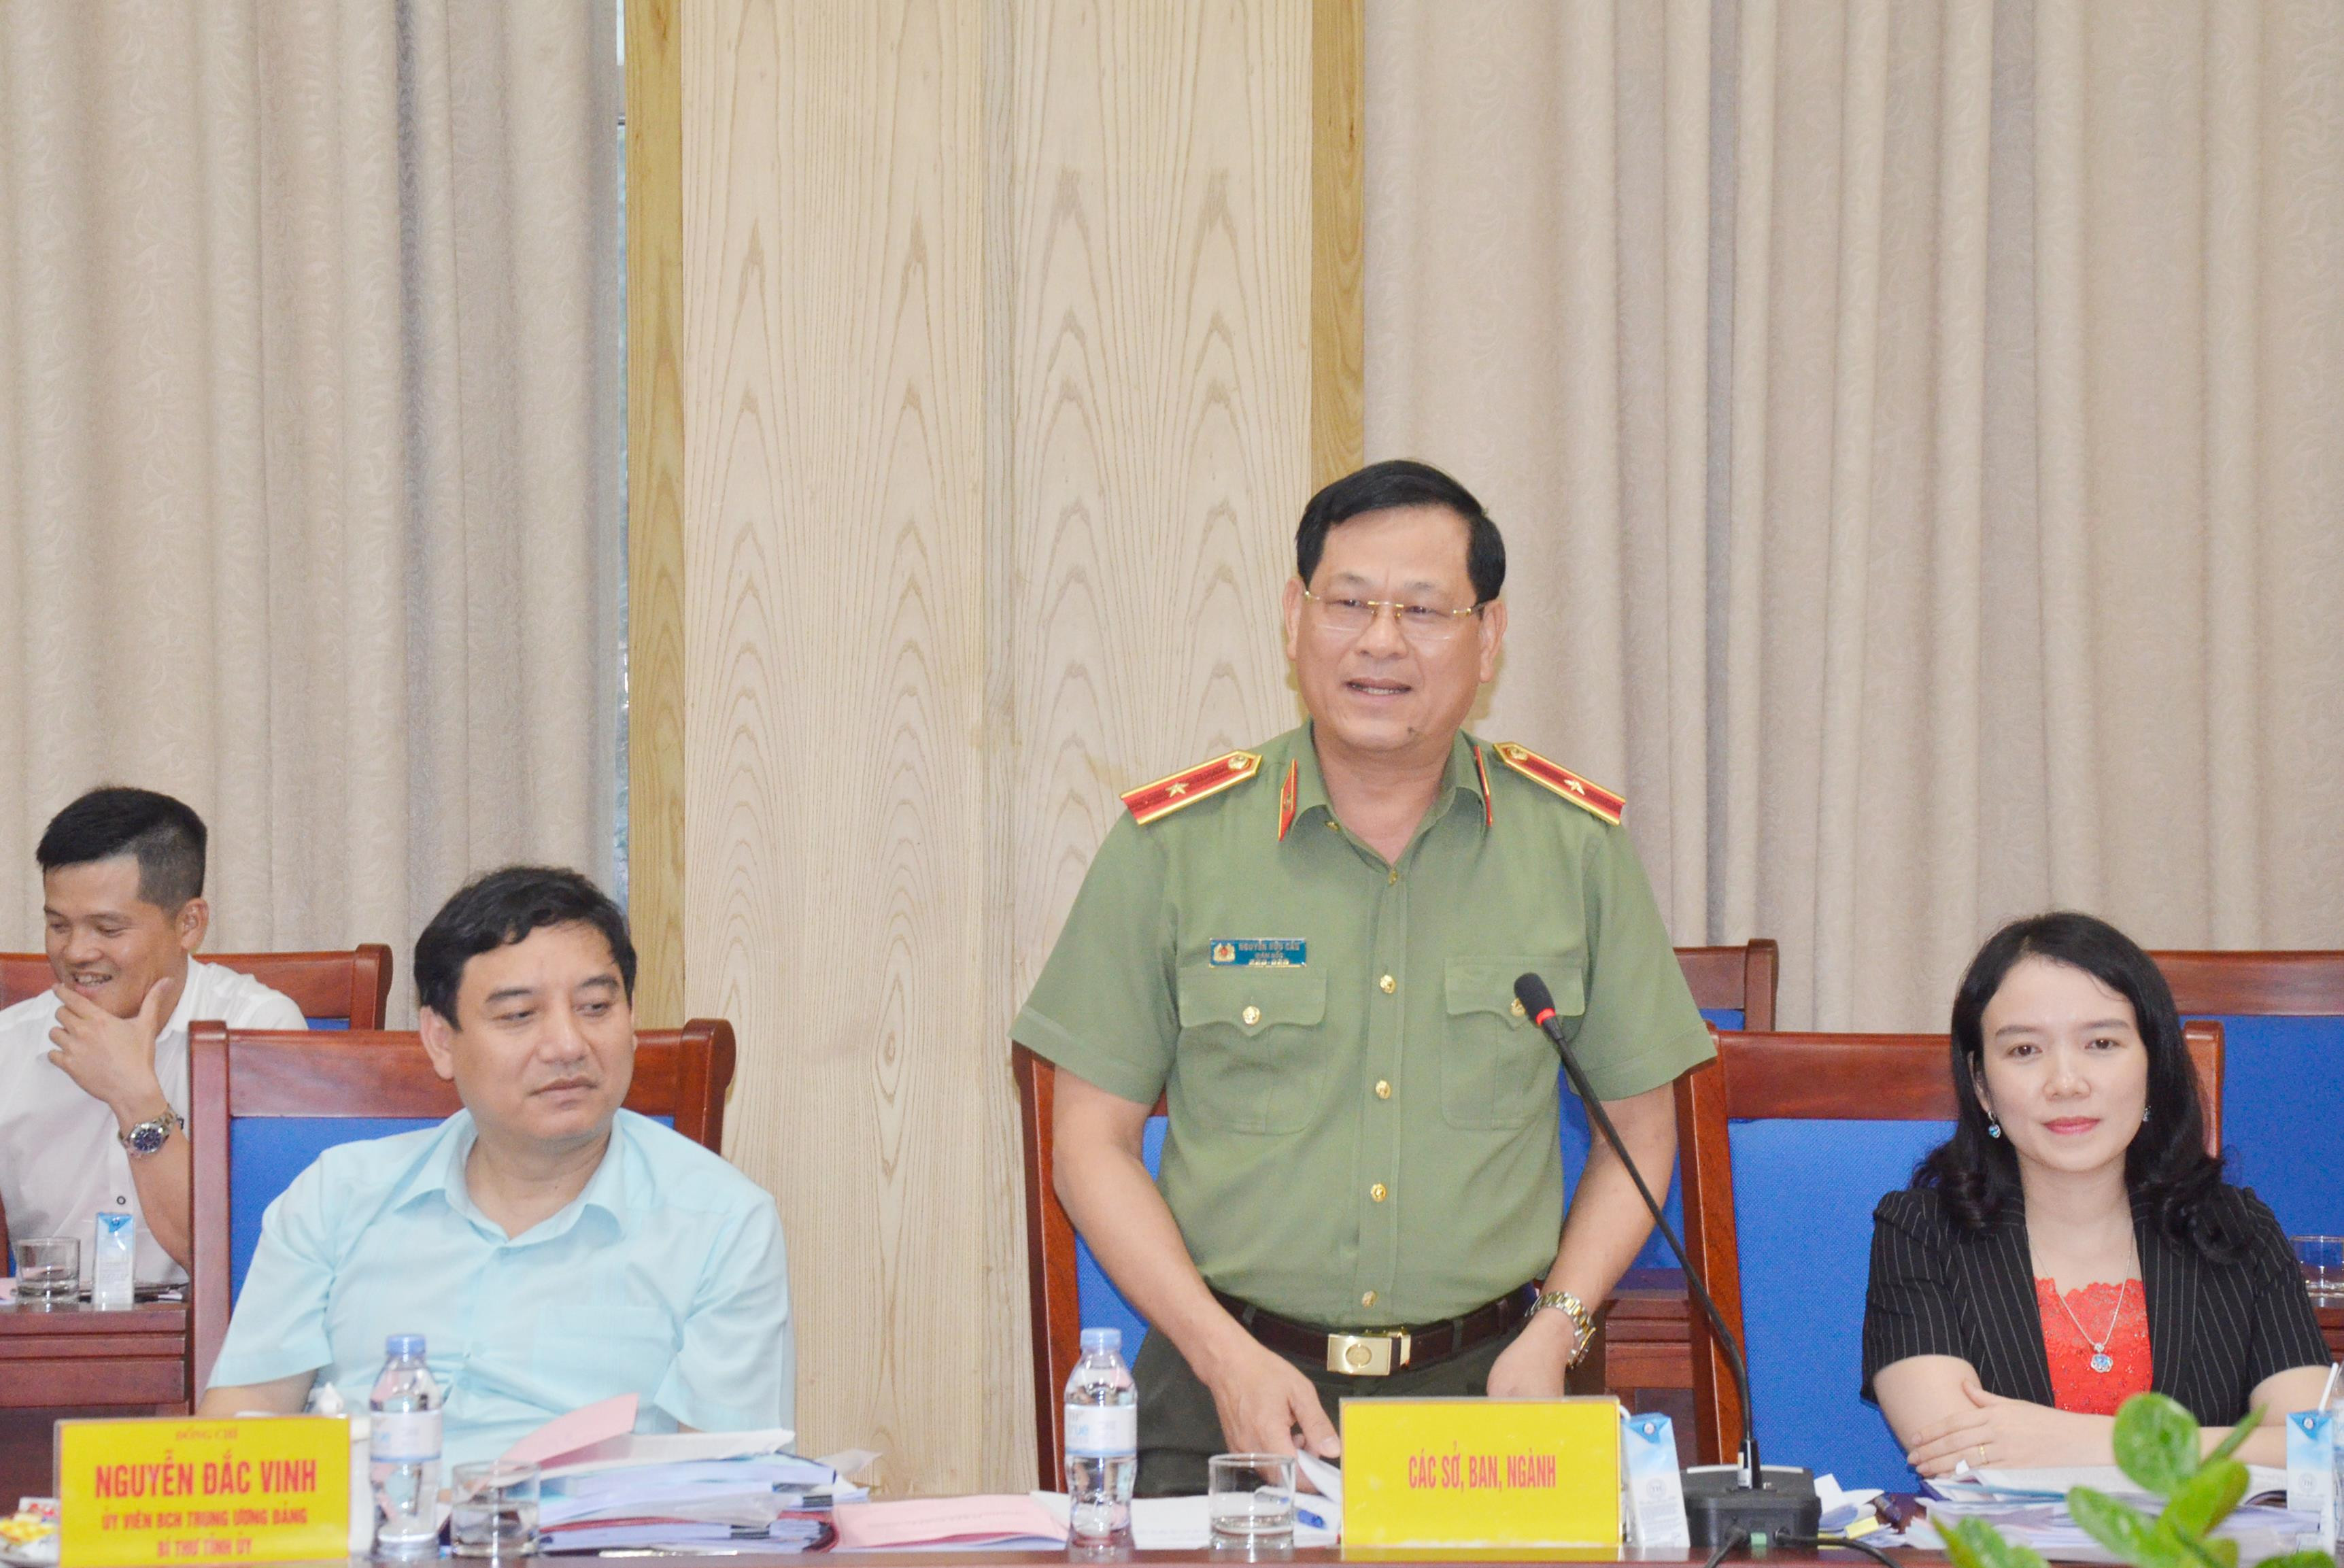 Giám đốc Công an tỉnh Nguyễn Hữu Cầu thông tin về các vụ việc xâm hại trẻ em trên địa bàn. Ảnh: Thanh Lê